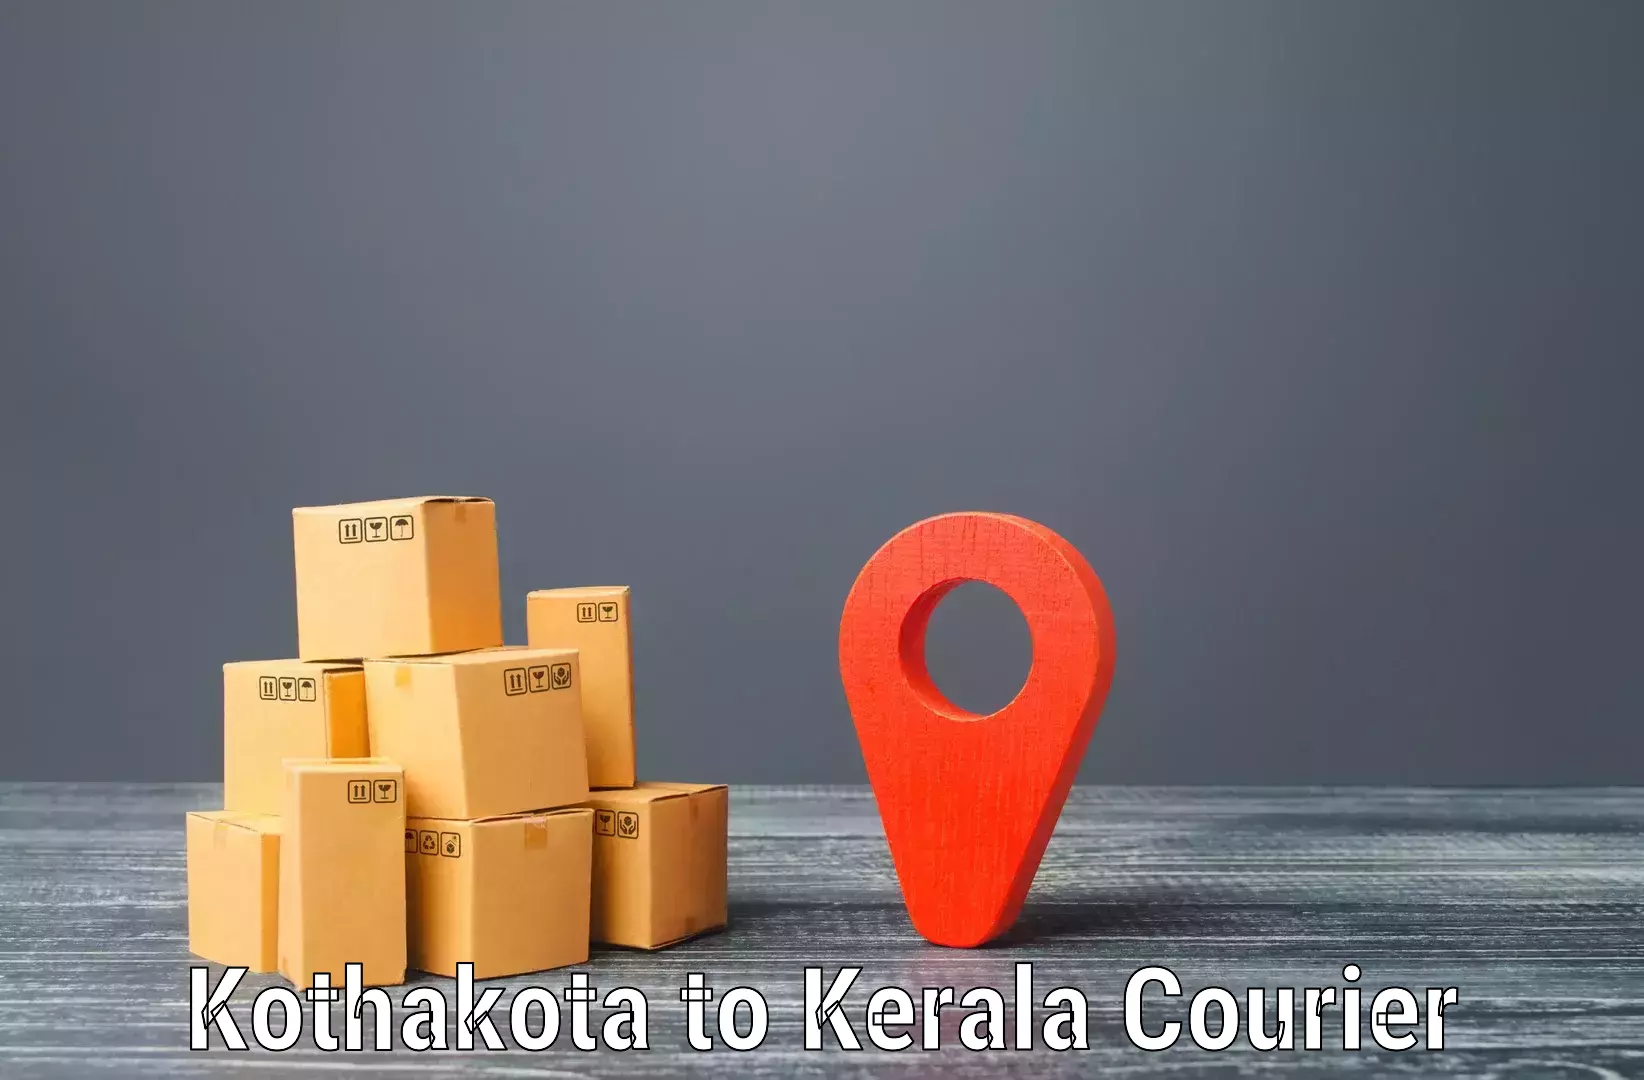 Urgent courier needs Kothakota to Venjaramoodu